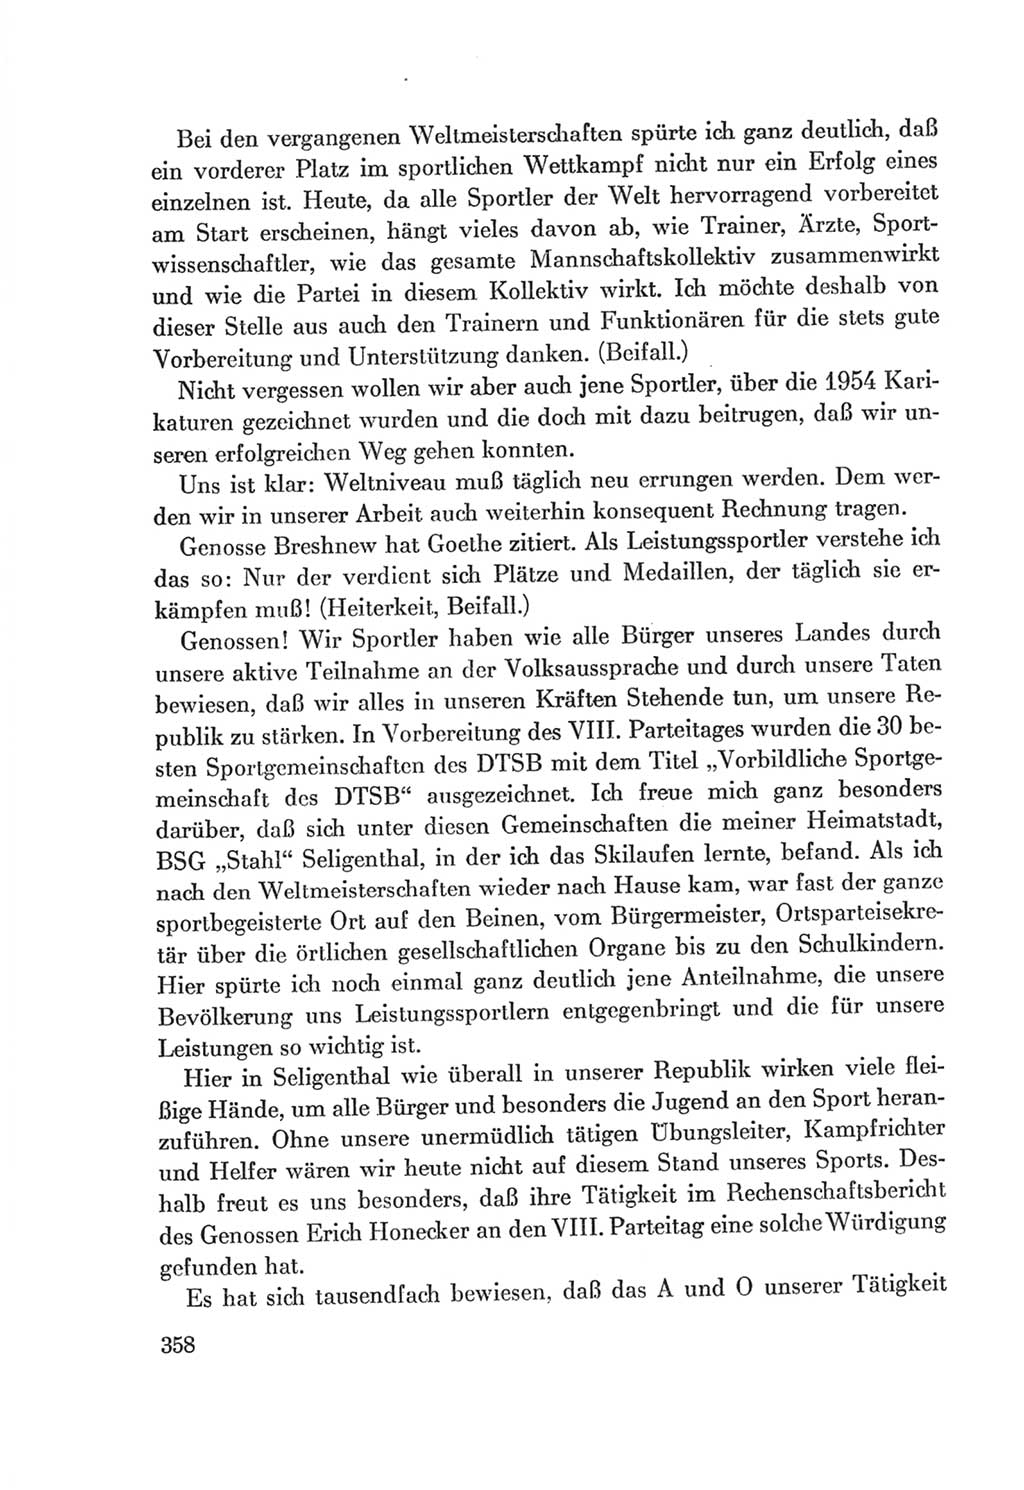 Protokoll der Verhandlungen des Ⅷ. Parteitages der Sozialistischen Einheitspartei Deutschlands (SED) [Deutsche Demokratische Republik (DDR)] 1971, Band 1, Seite 358 (Prot. Verh. Ⅷ. PT SED DDR 1971, Bd. 1, S. 358)